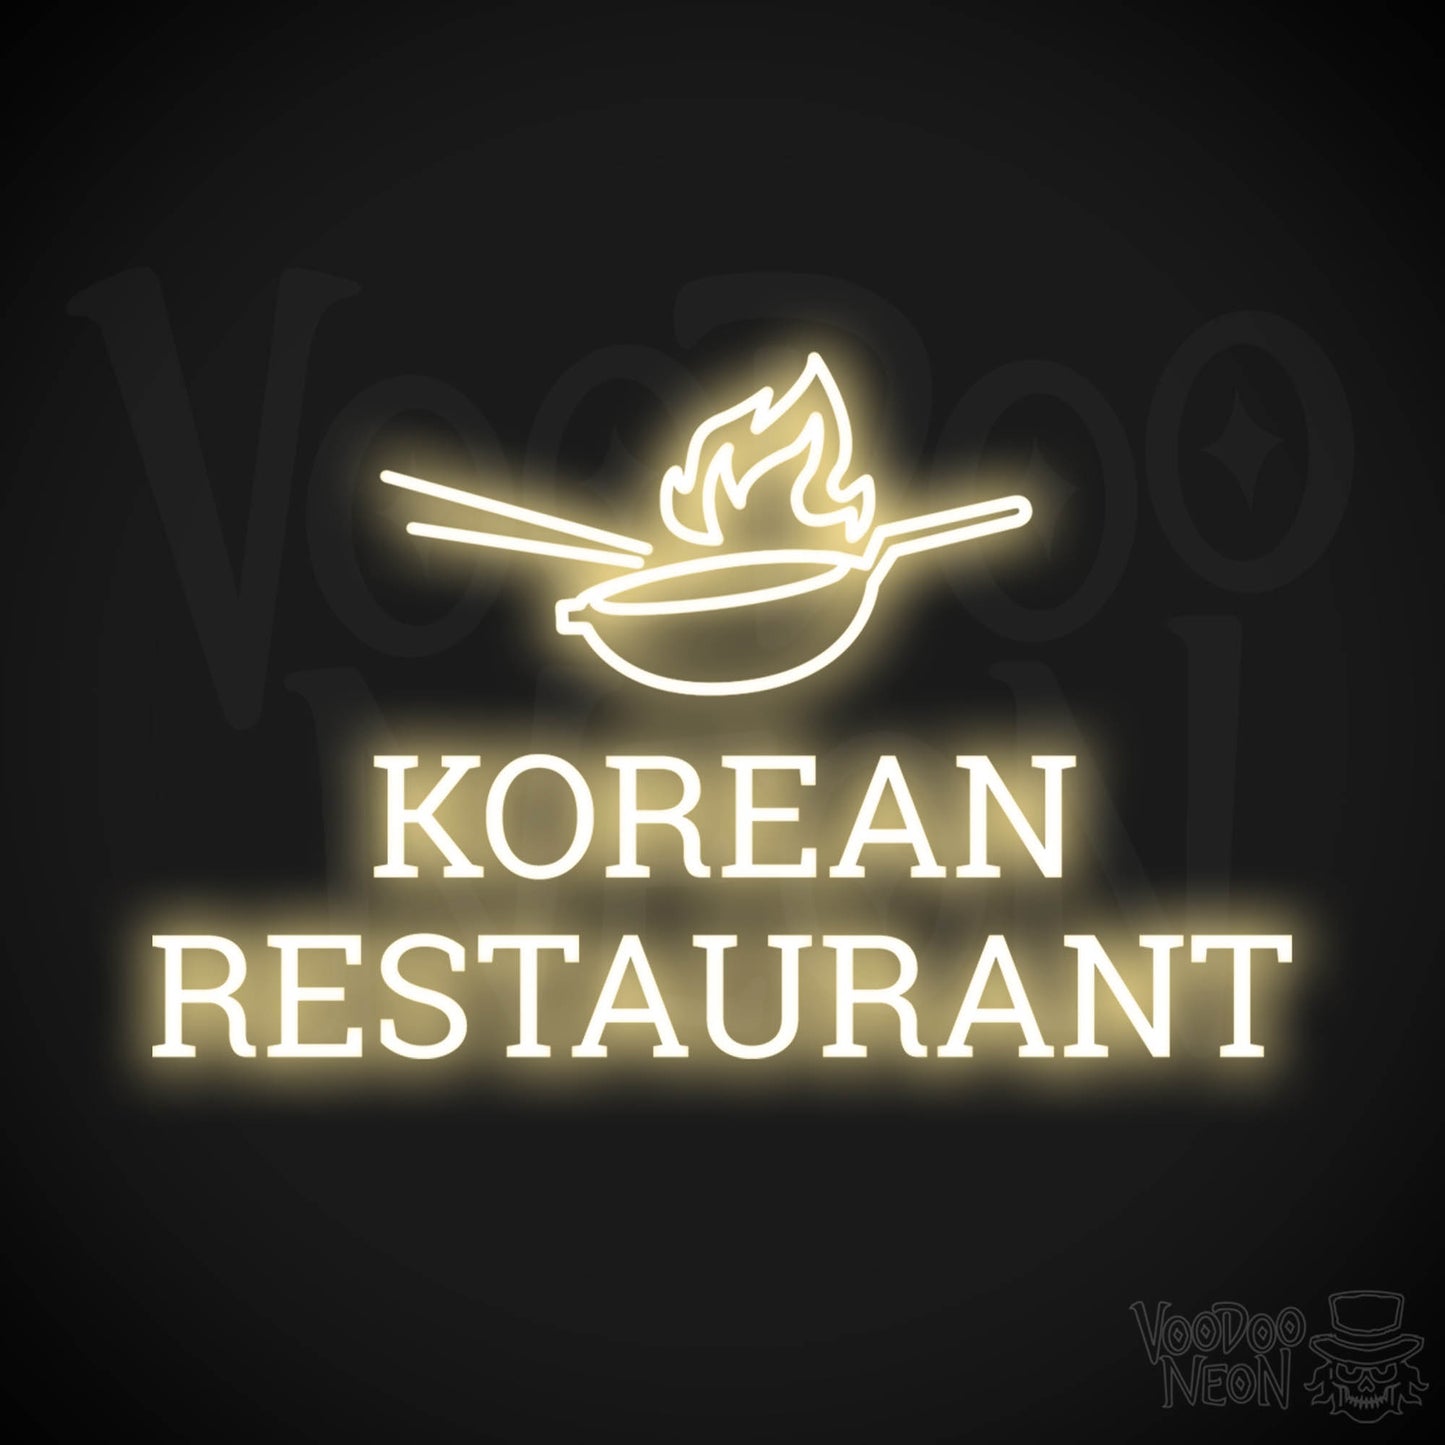 Korean Restaurant LED Neon - Warm White